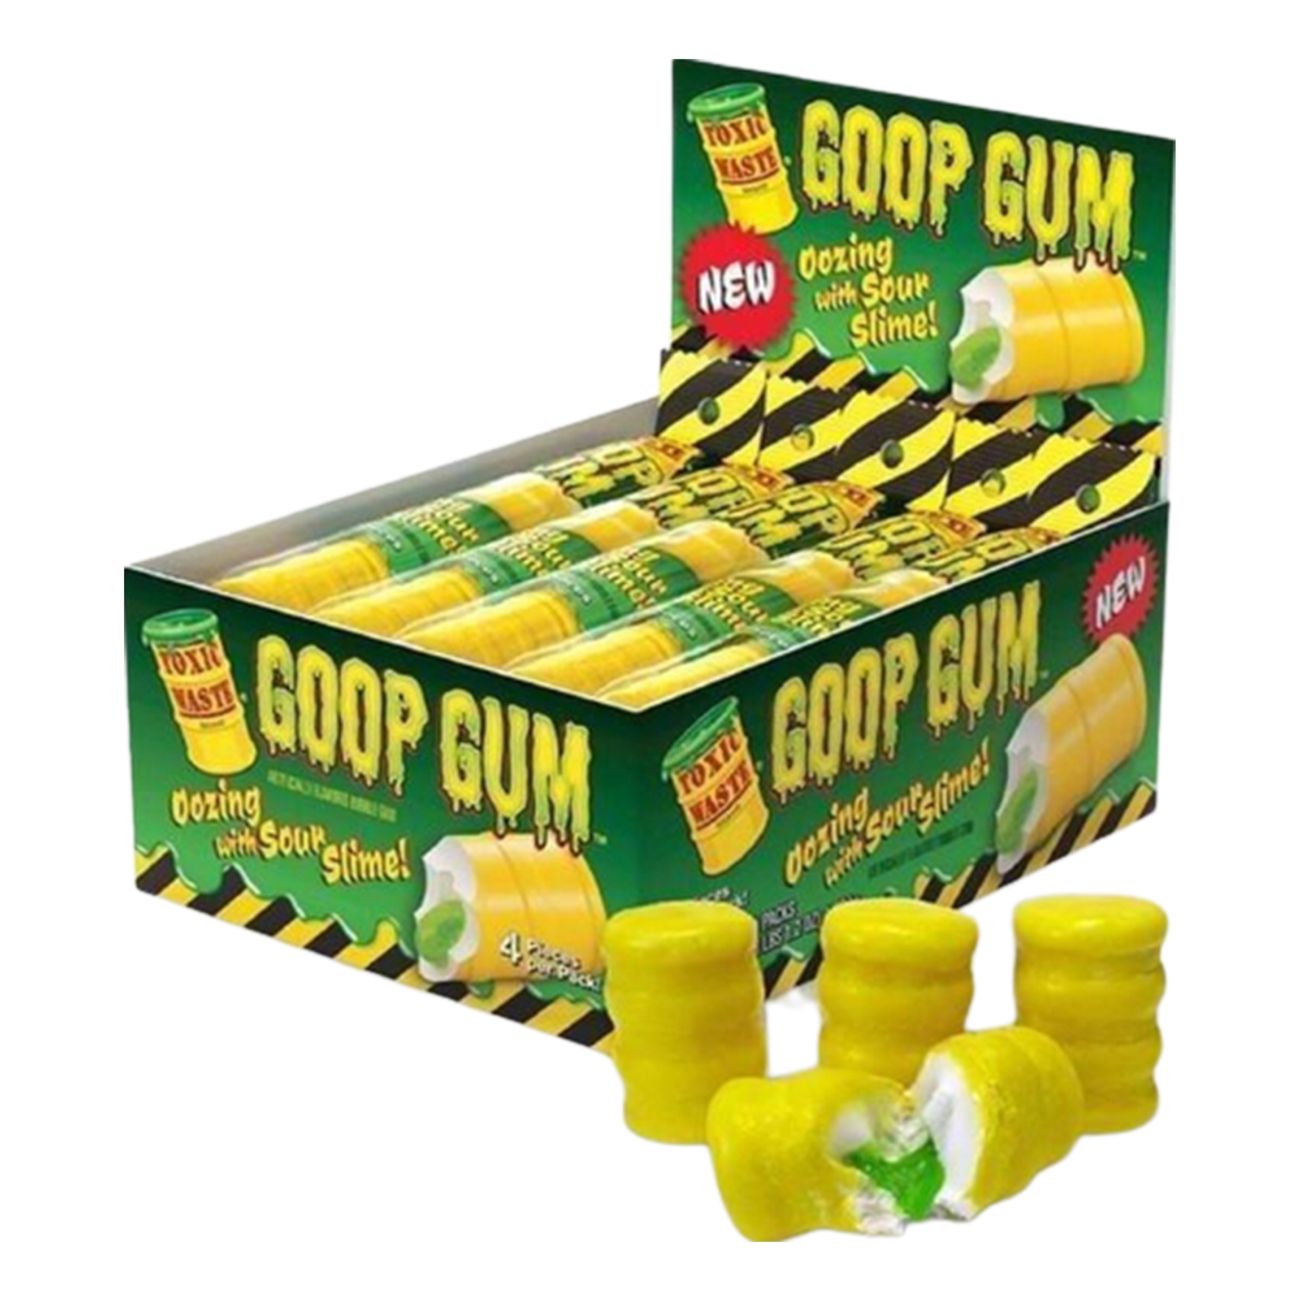 toxic-waste-goop-tuggummi-storpack-45805-2